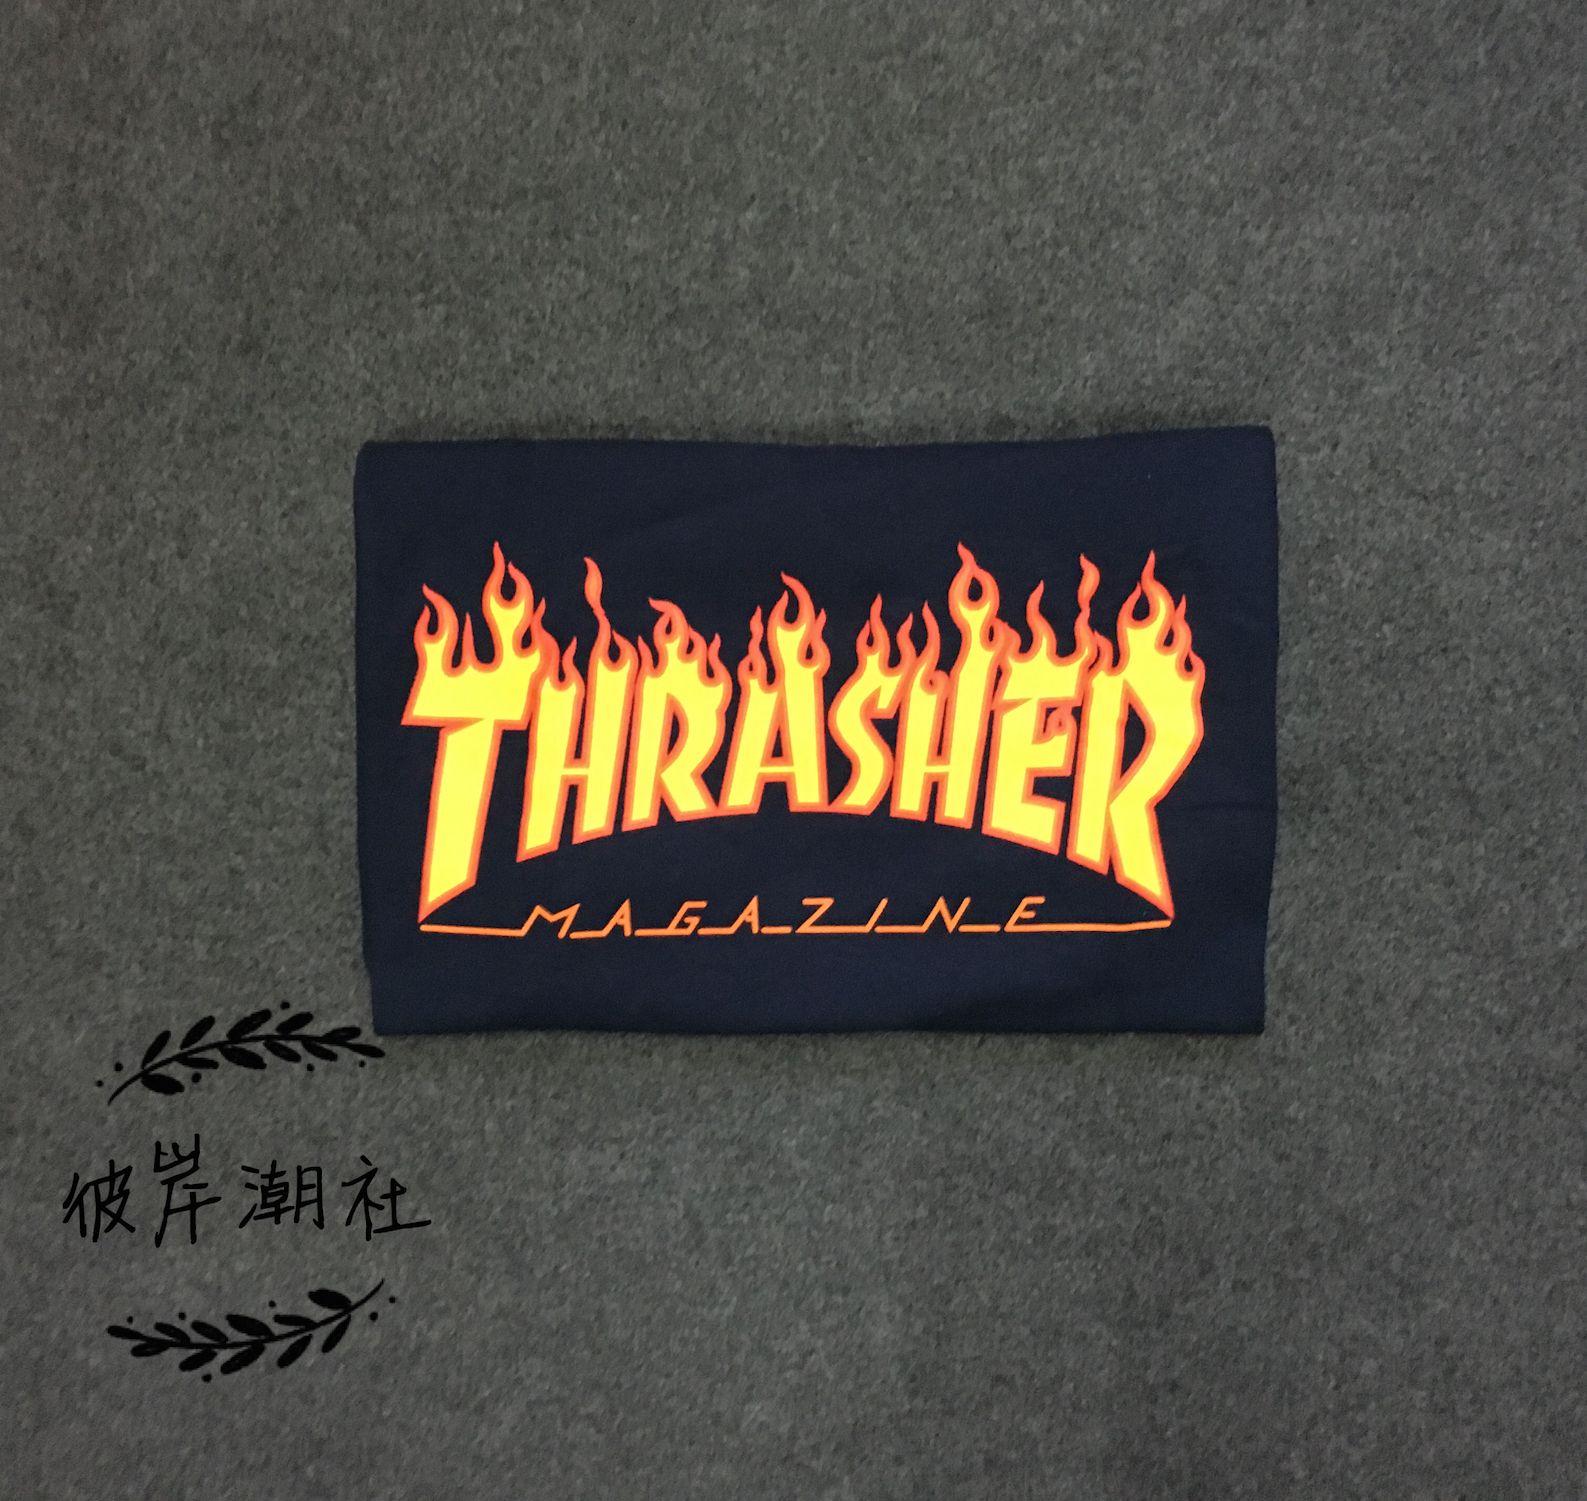 Magazine Thrasher Flame Logo - USD 68.14 (Spot) Thrasher Flame Logo Black T Shirt Flame Magazine